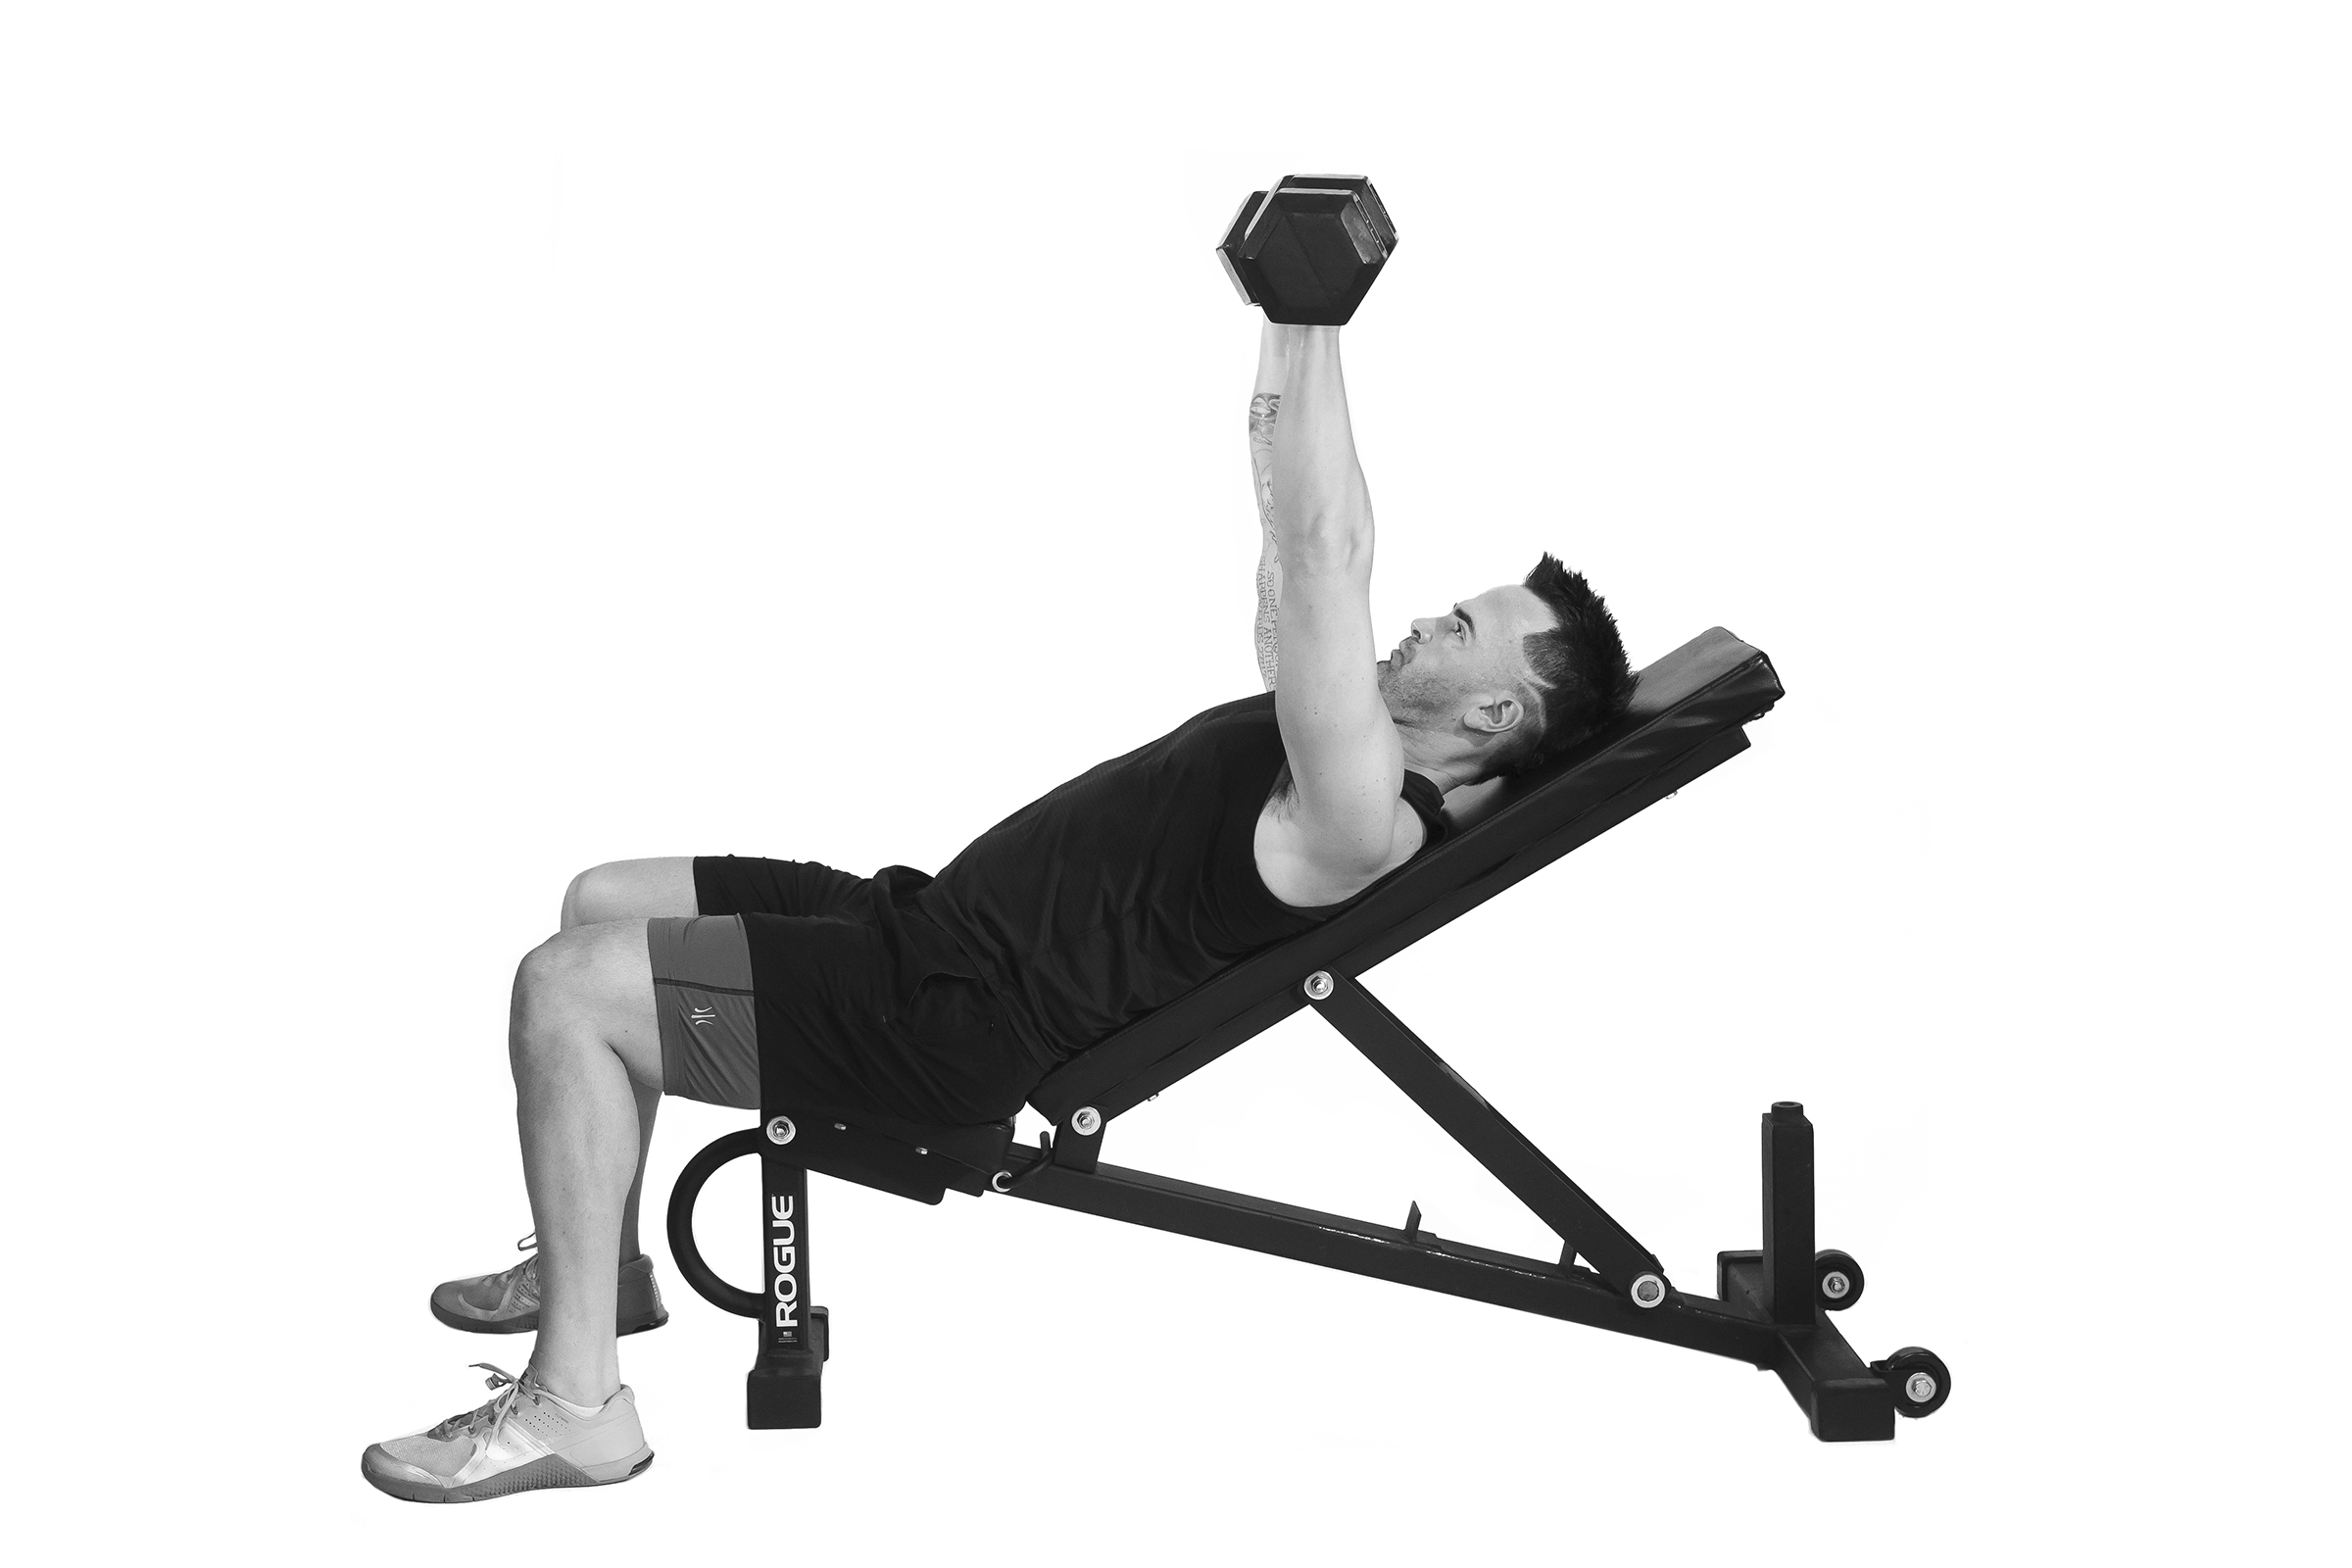 Le dvelopp inclin fait partie des exercices recommands pour muscler le haut du corps.